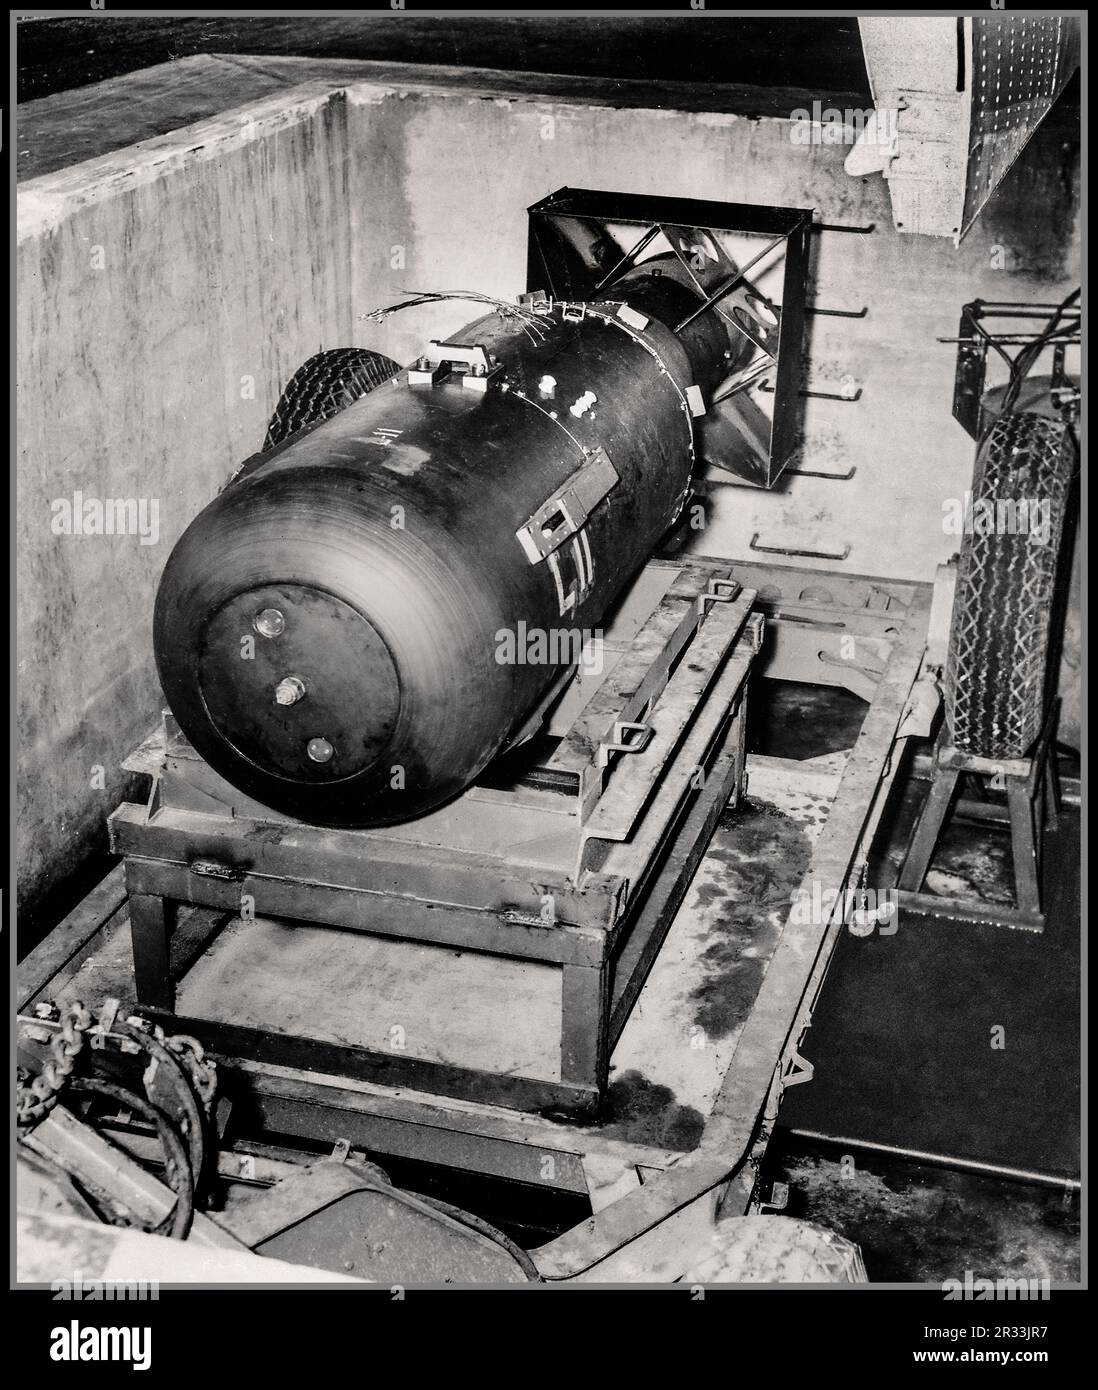 BOMBA ATOMICA ATOM NUCLEARE HIROSHIMA WW2 A-BOMB. Unità LB (Little Boy) sulla culla del rimorchio nella fossa di Tinian Island, prima di essere caricata nella baia di Enola Gay dell'aeromobile. [Notate la porta del vano bombe nell'angolo in alto a destra.] , 08/1945. Prima bomba nucleare tattica lunga 3,05 metri "Little Boy" che sta per essere caricata su un aereo B-29 diretto a Hiroshima in Giappone. Questa bomba in seguito costerà la vita a più di 70.000 persone. Foto Stock